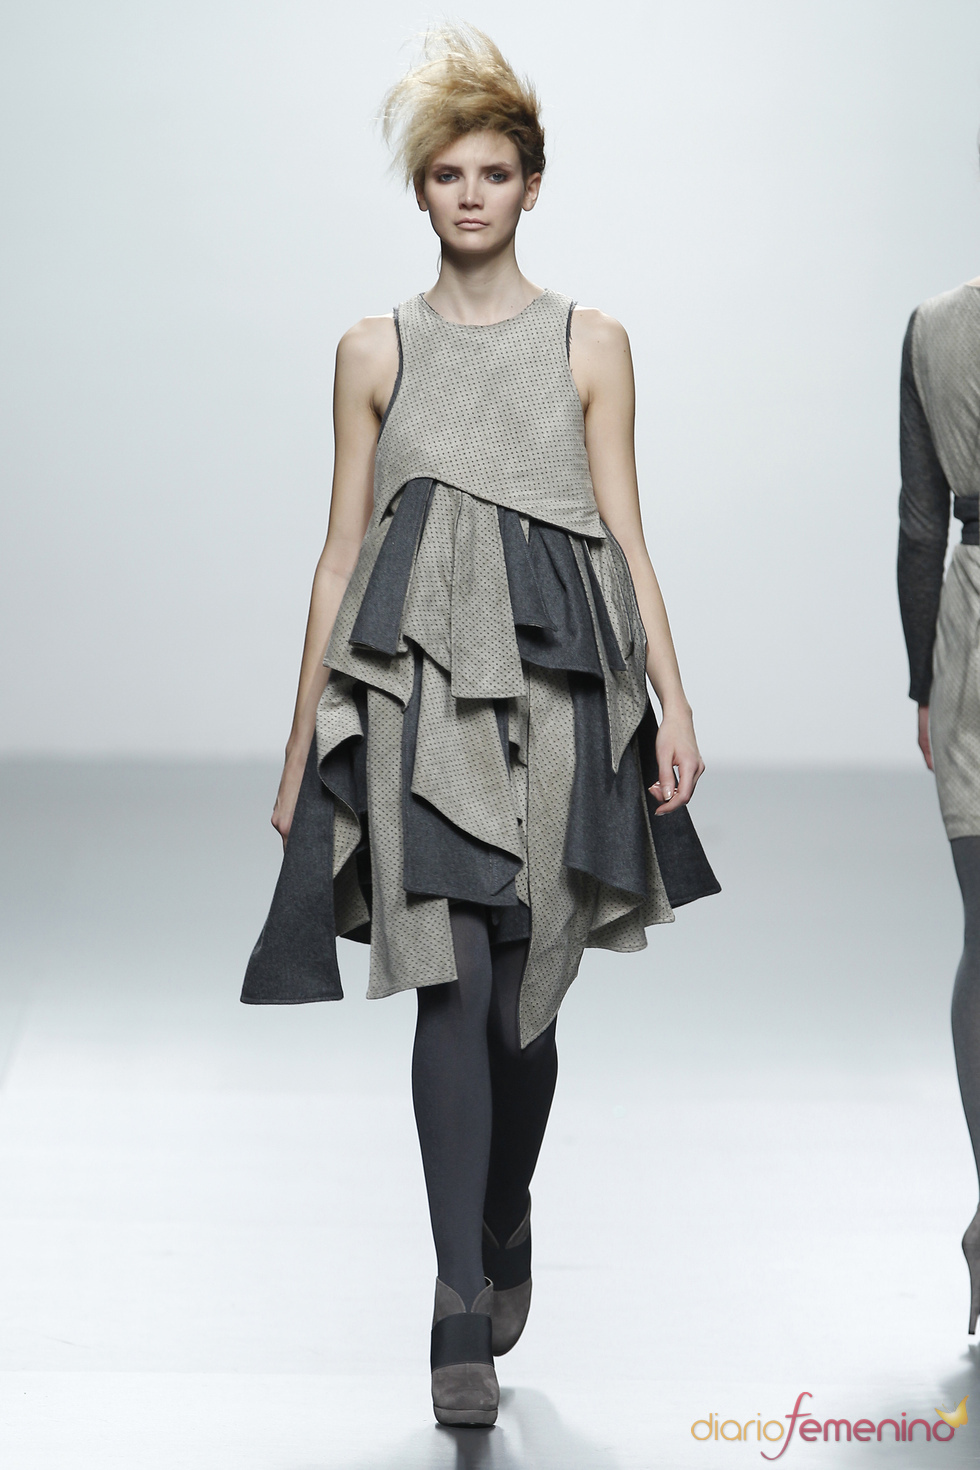 Vestido gris estampado patchwork. Sara Coleman. Cibeles Madrid Fashion Week 2011